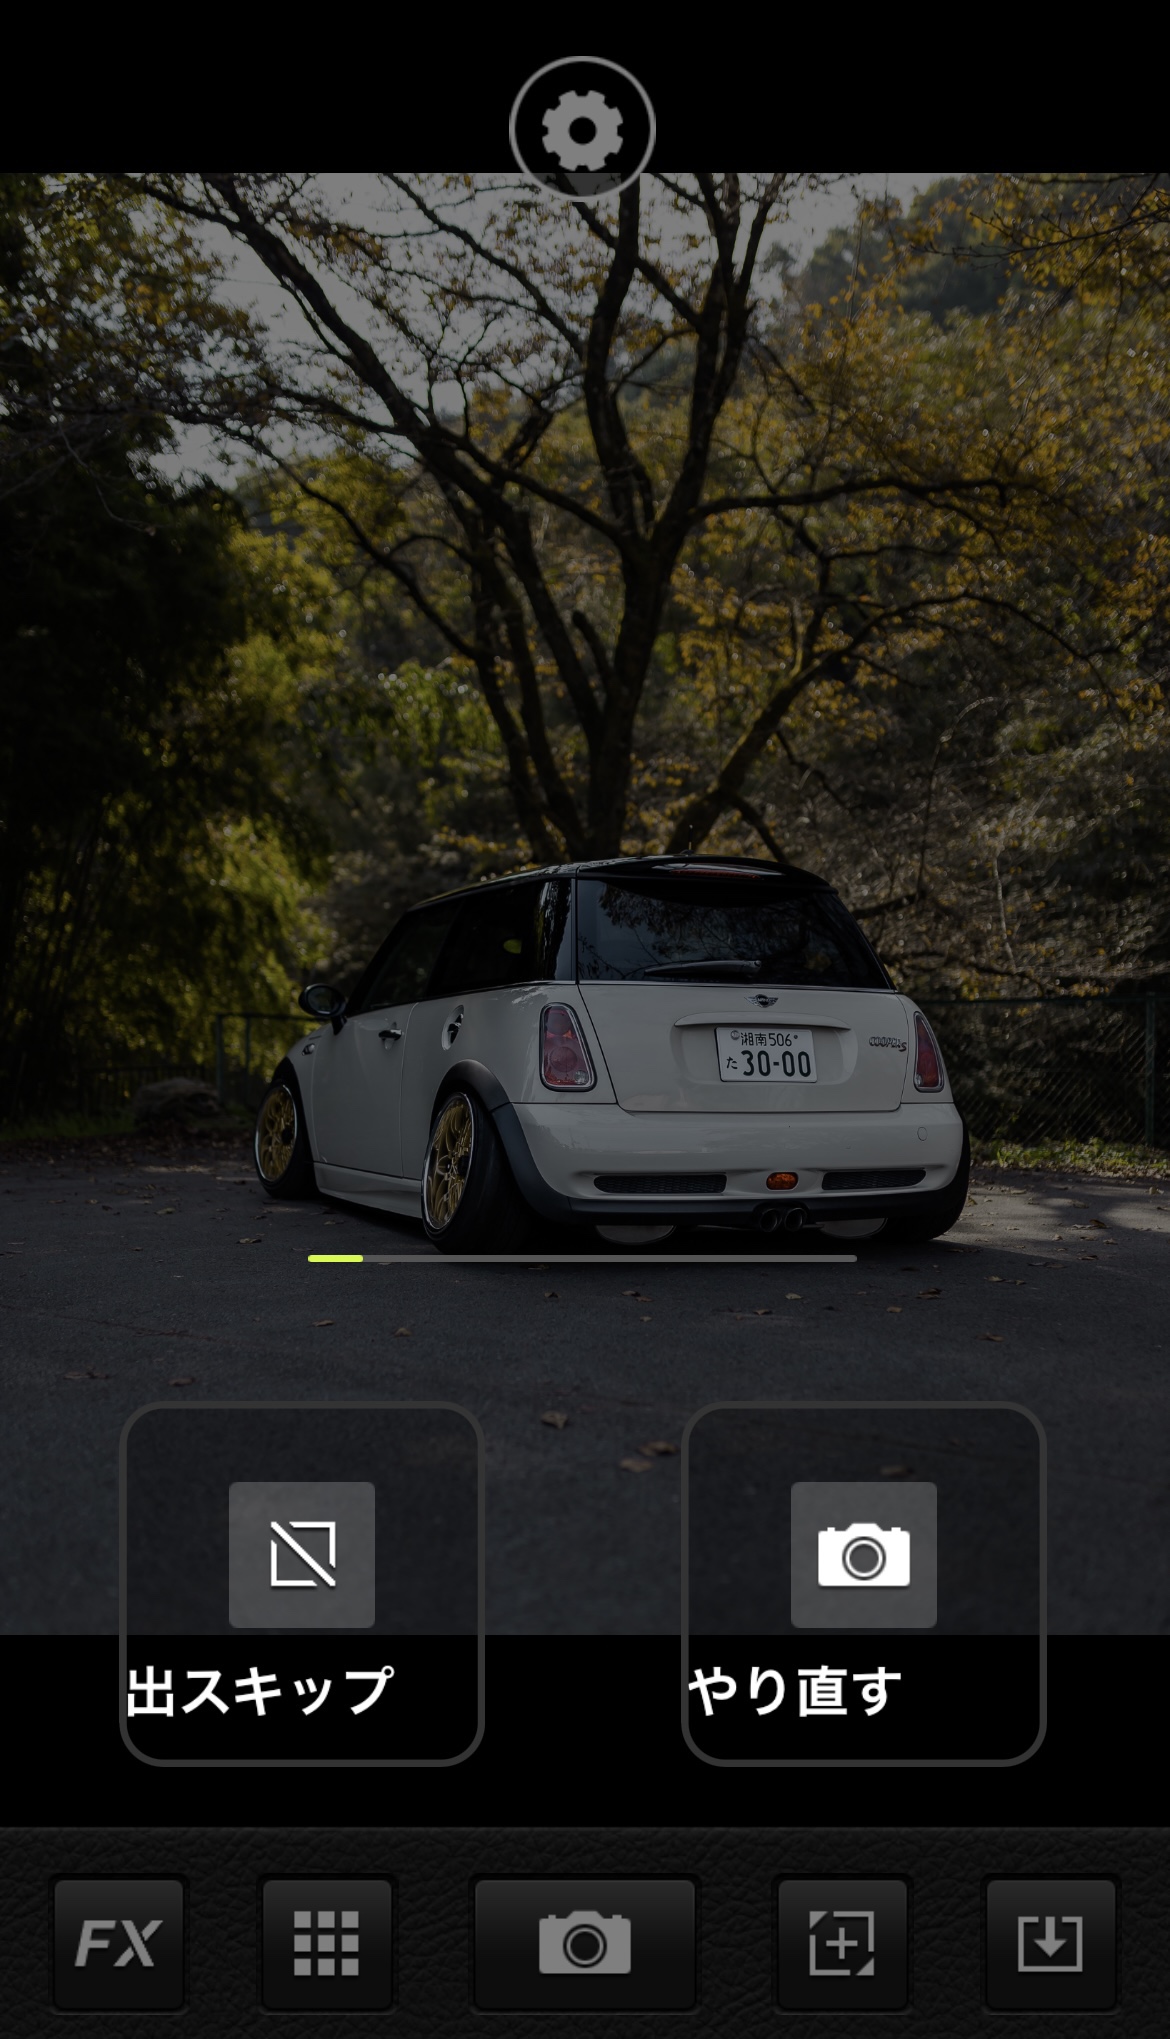 車のナンバープレートを隠す専用アプリの紹介と使い方 Freedom